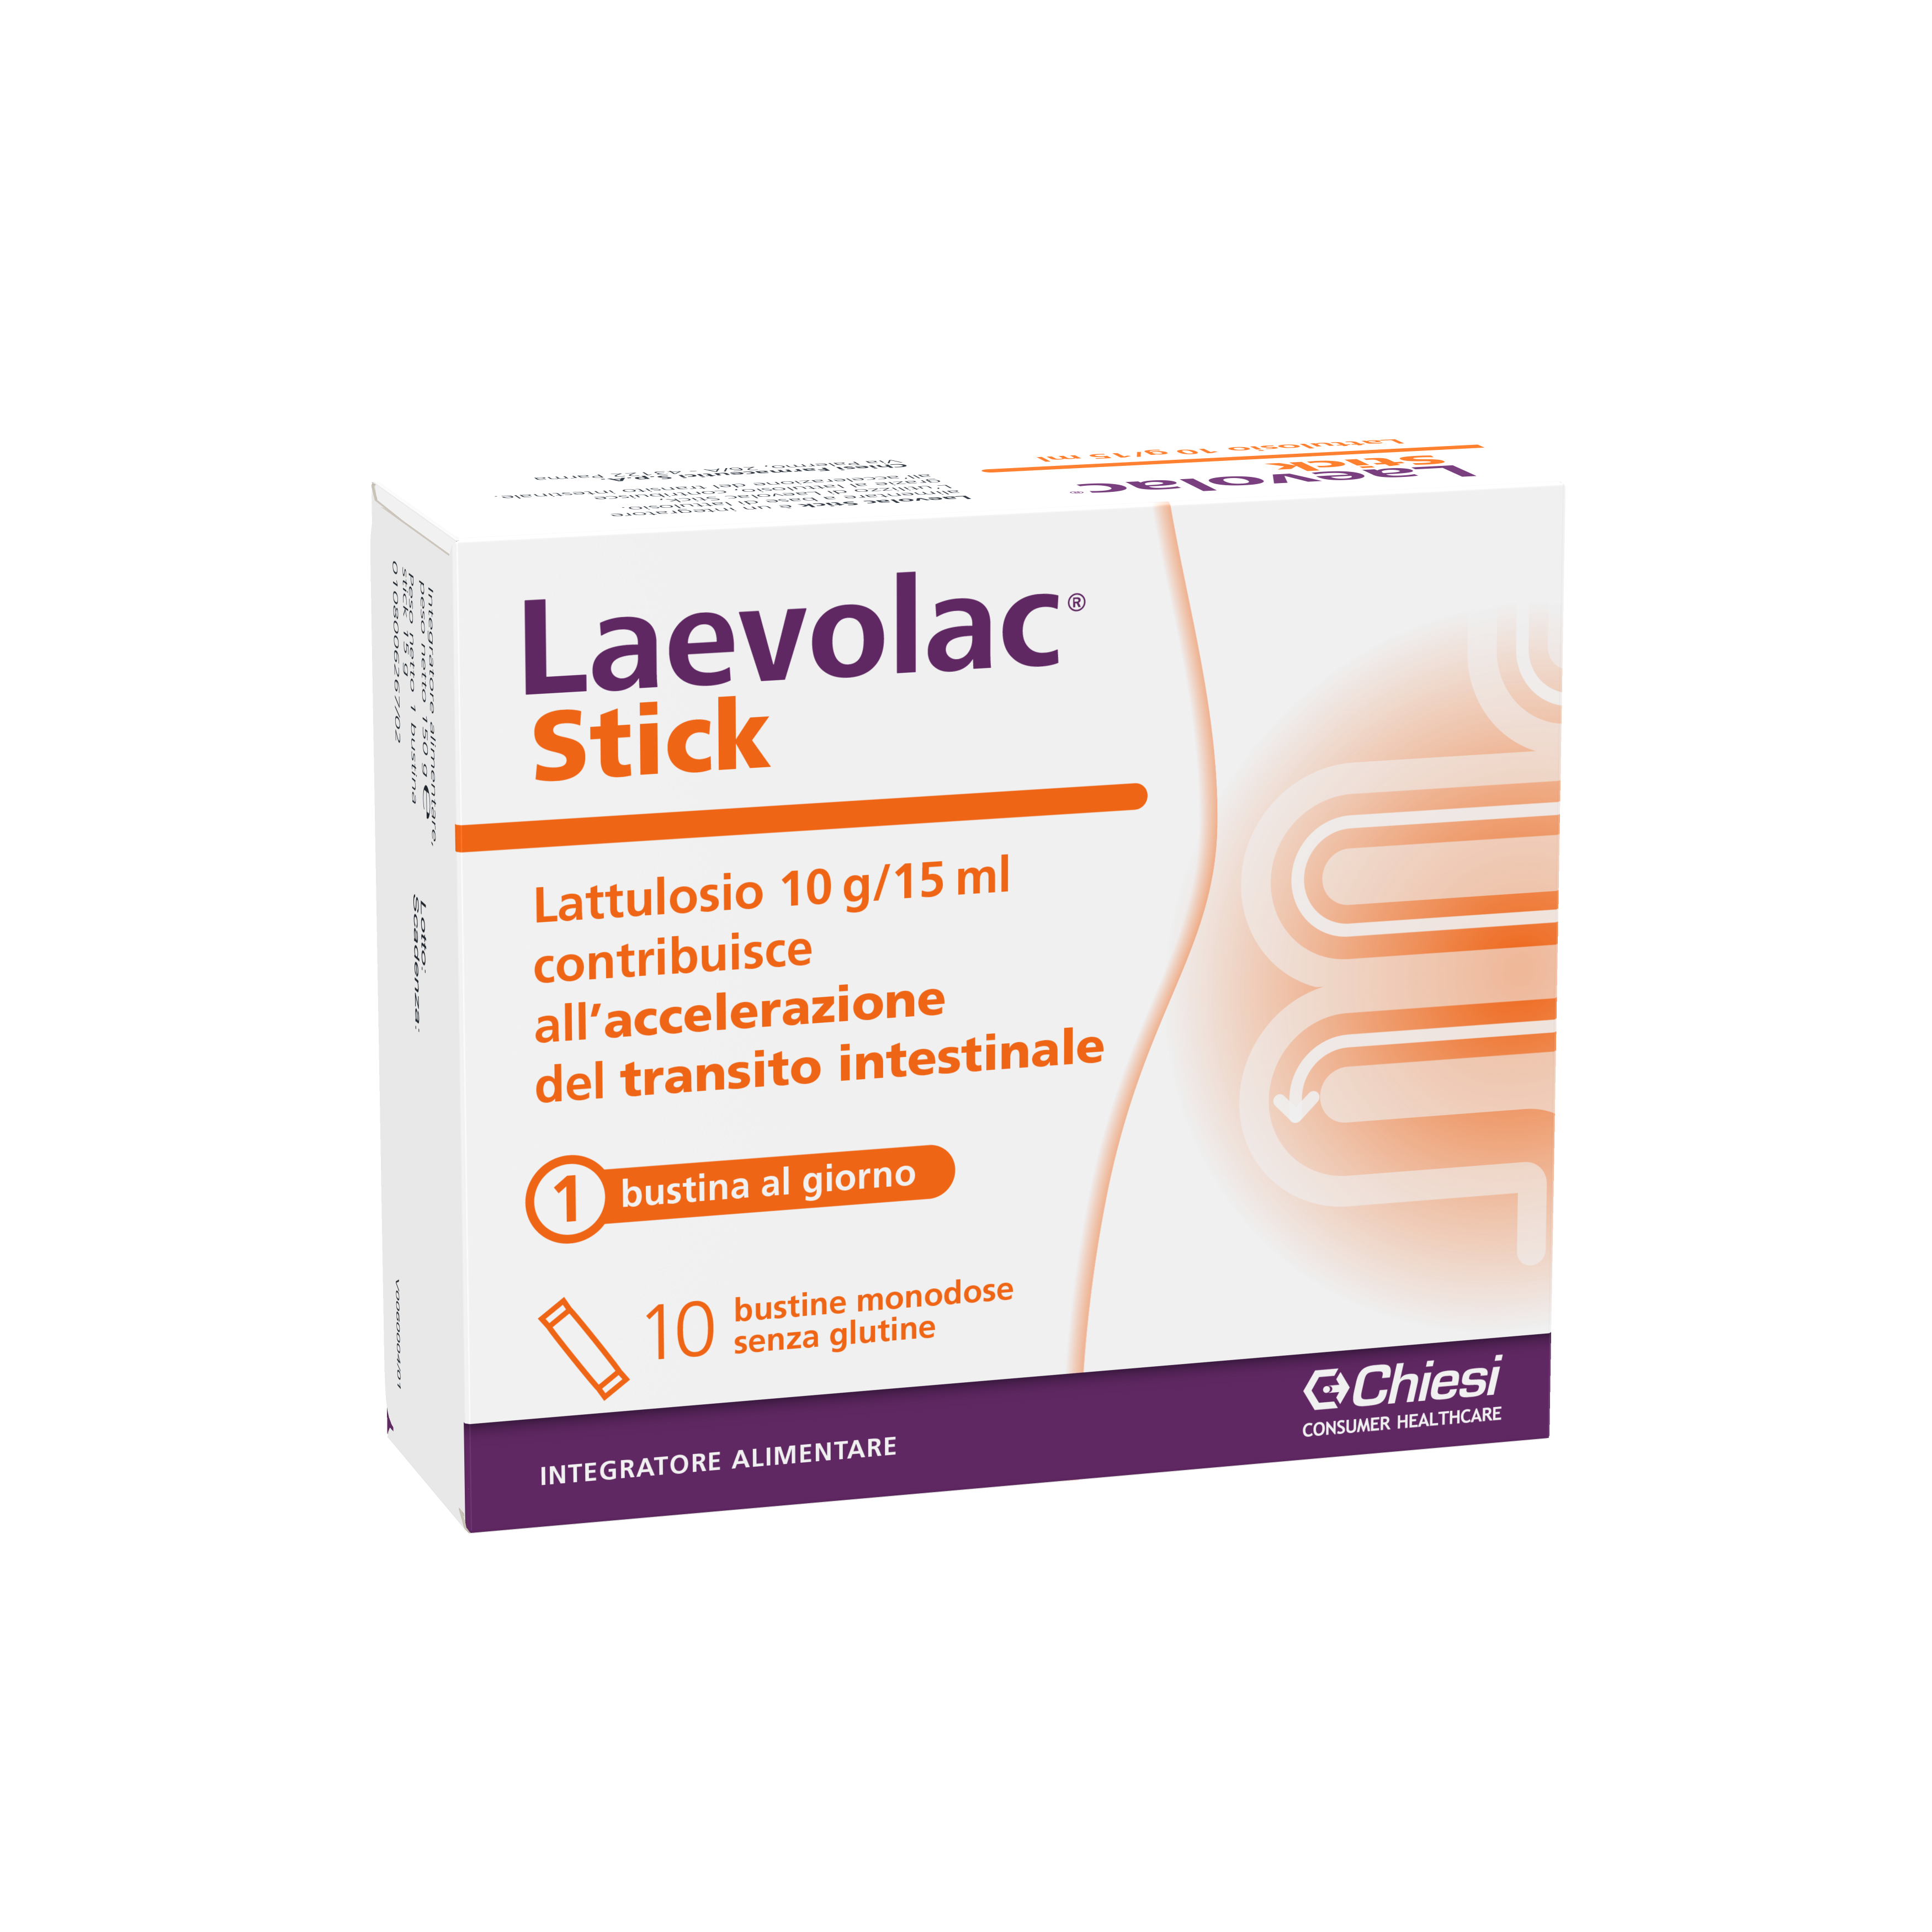 Immagine della confezione di Laevolac Stick, integratore di Chiesi Farmaceutici S.p.A.